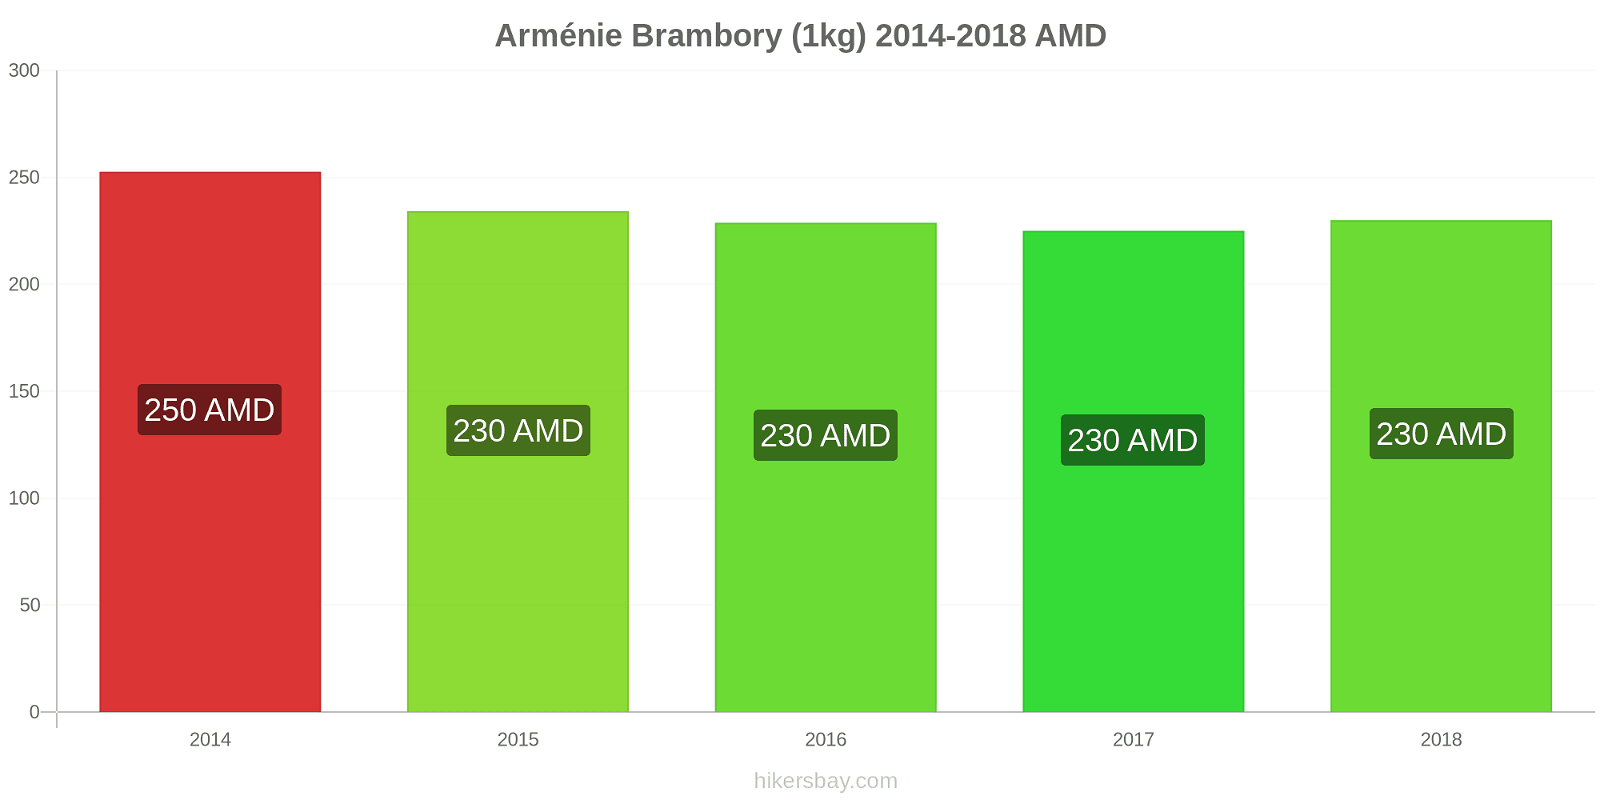 Arménie změny cen Brambory (1kg) hikersbay.com